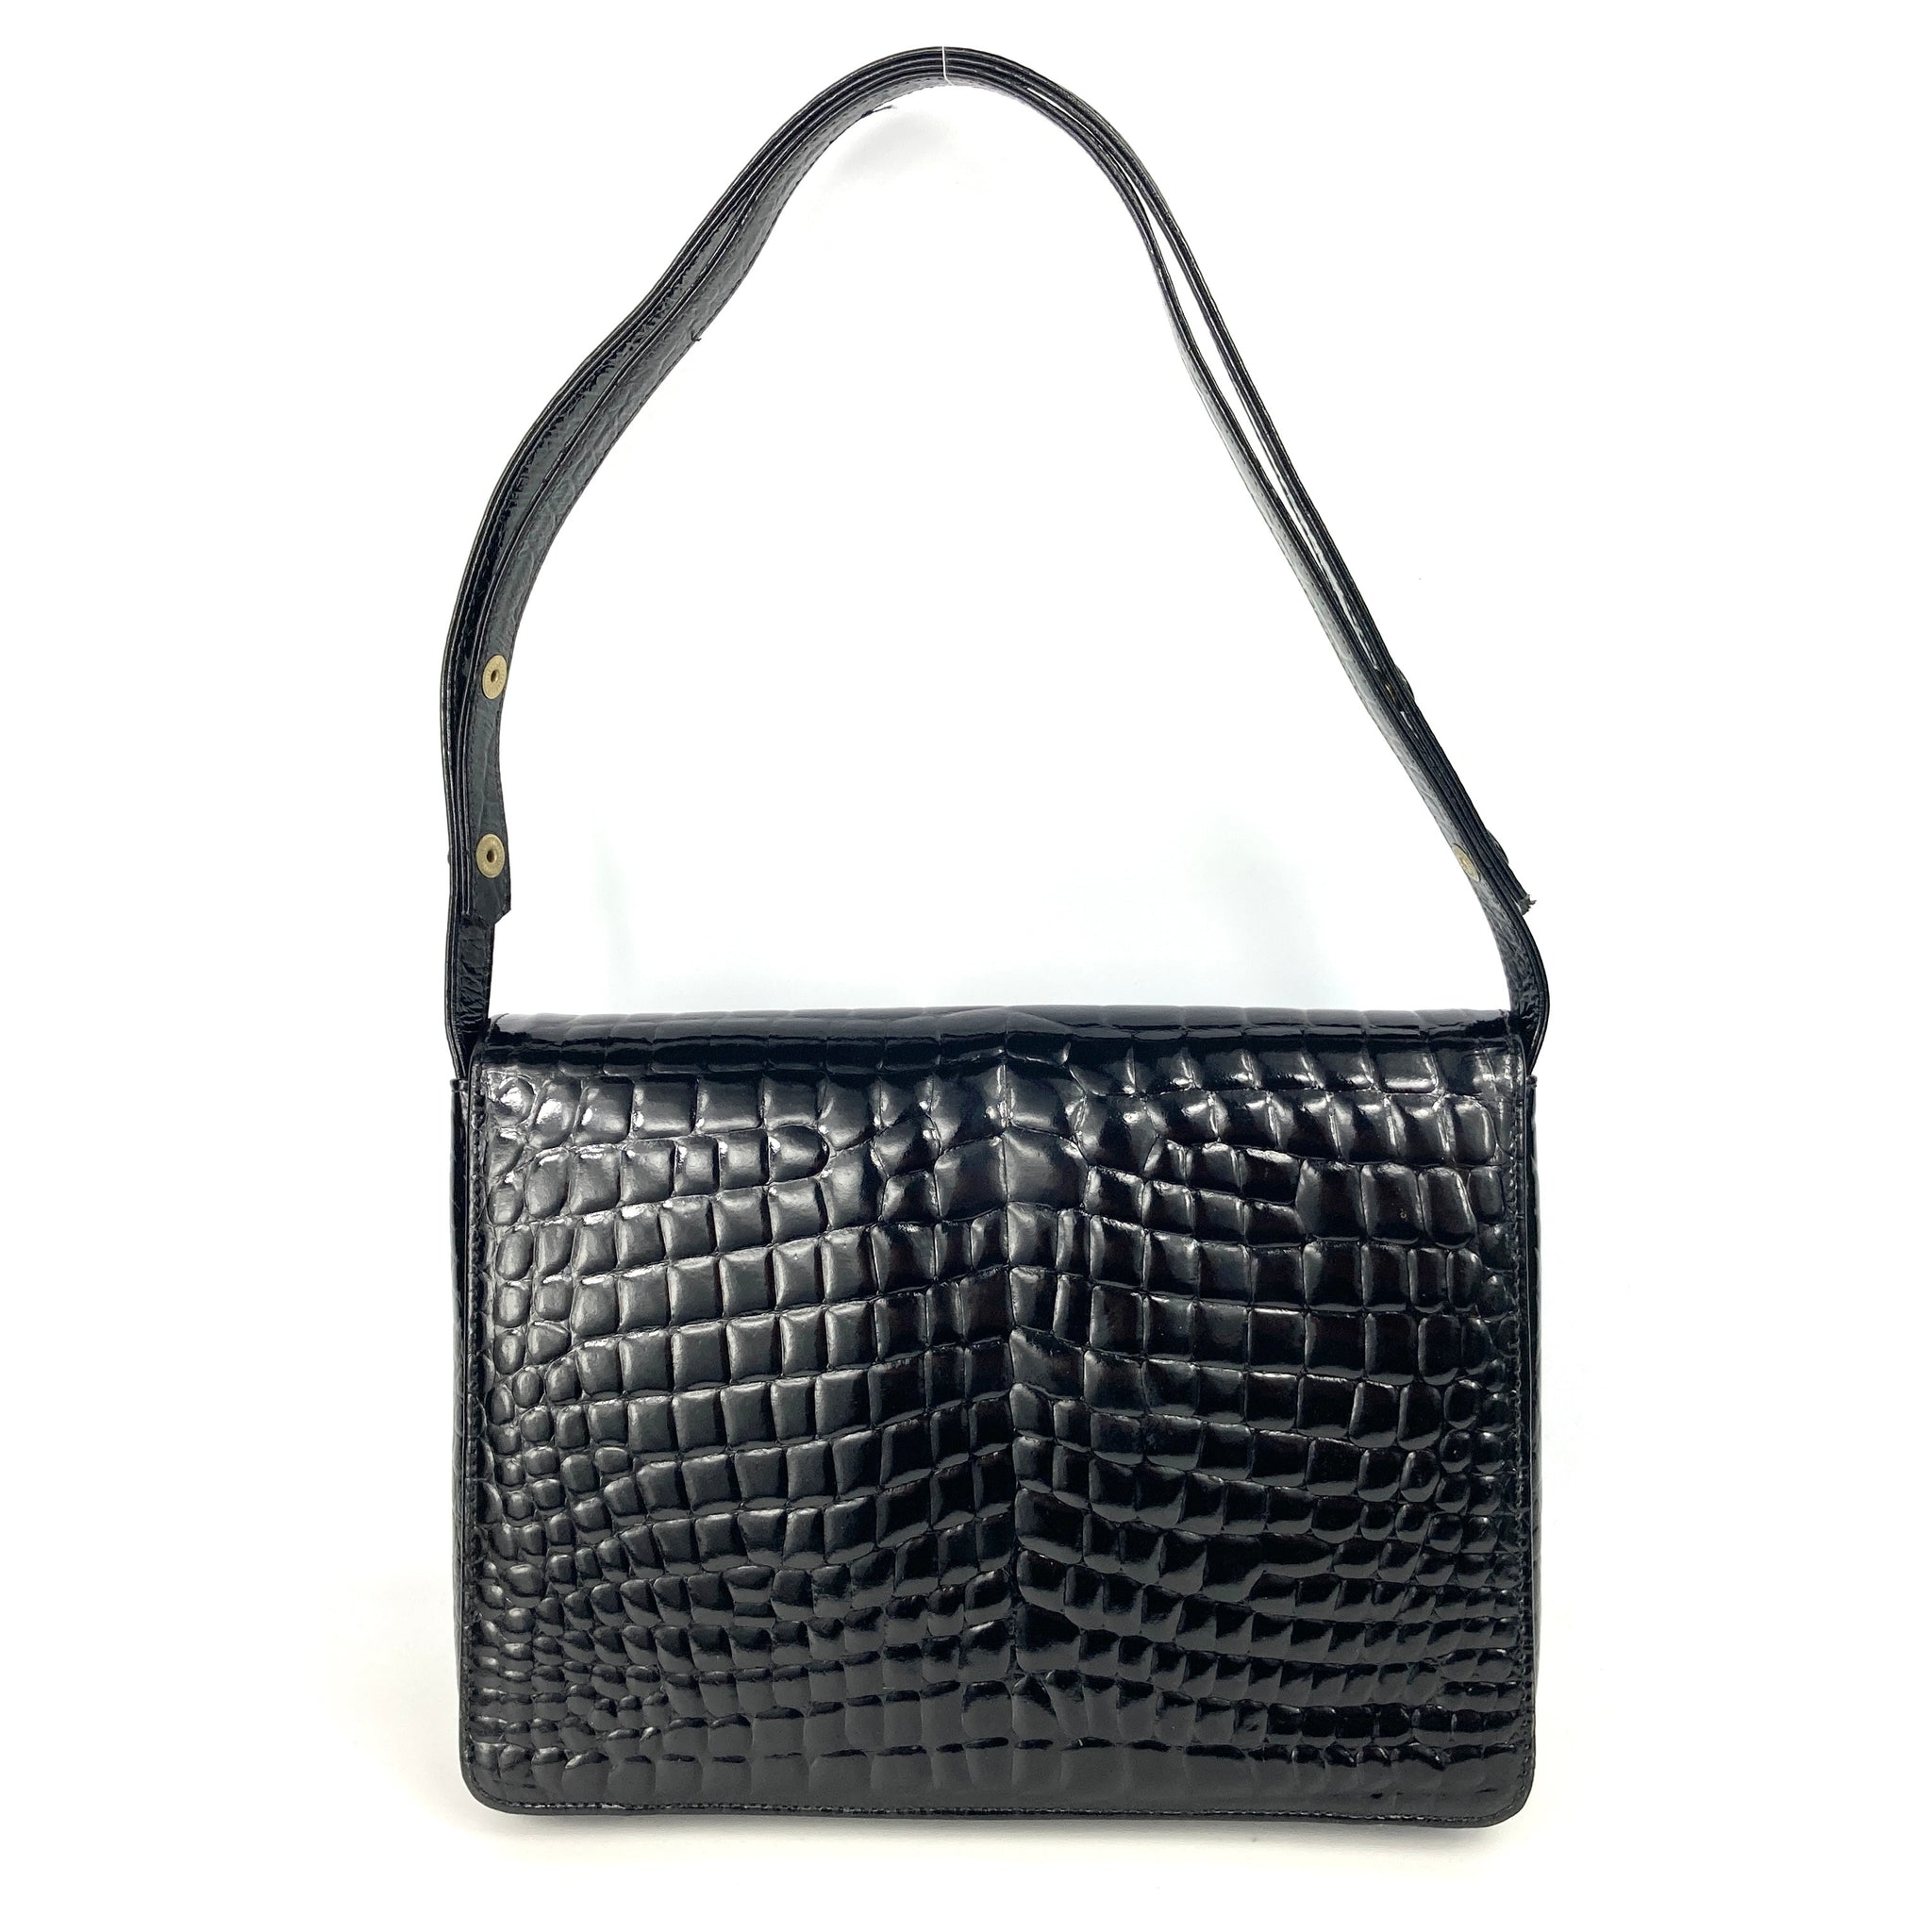 CoCopeaunts Patent Leather Handbags for Women Crocodile Print Shoulder Bag  Top Handle Crossbody Bag Zipper Closure Tote Bag Purse - Walmart.com